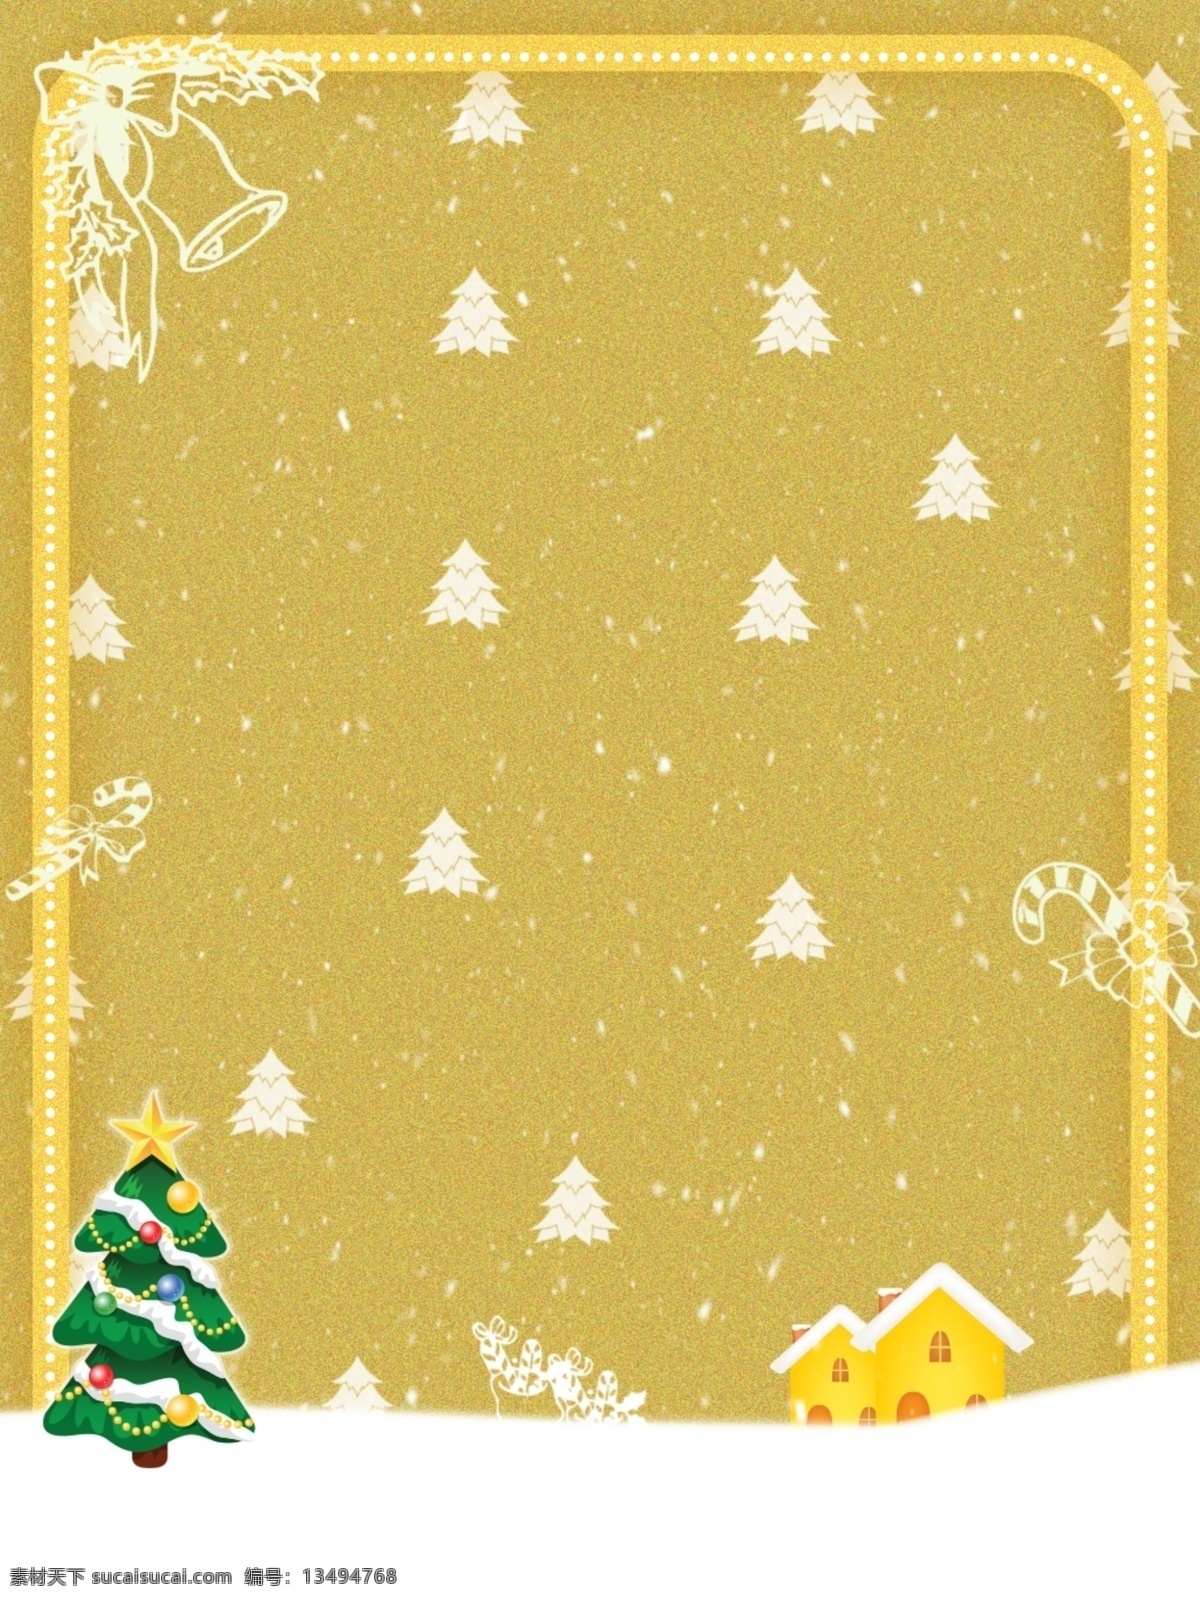 全 原创 创意 金色 圣诞节 背景 圣诞快乐 大气 高贵 边框背景 圣诞屋 金色圣诞节 圣诞 简约 边框